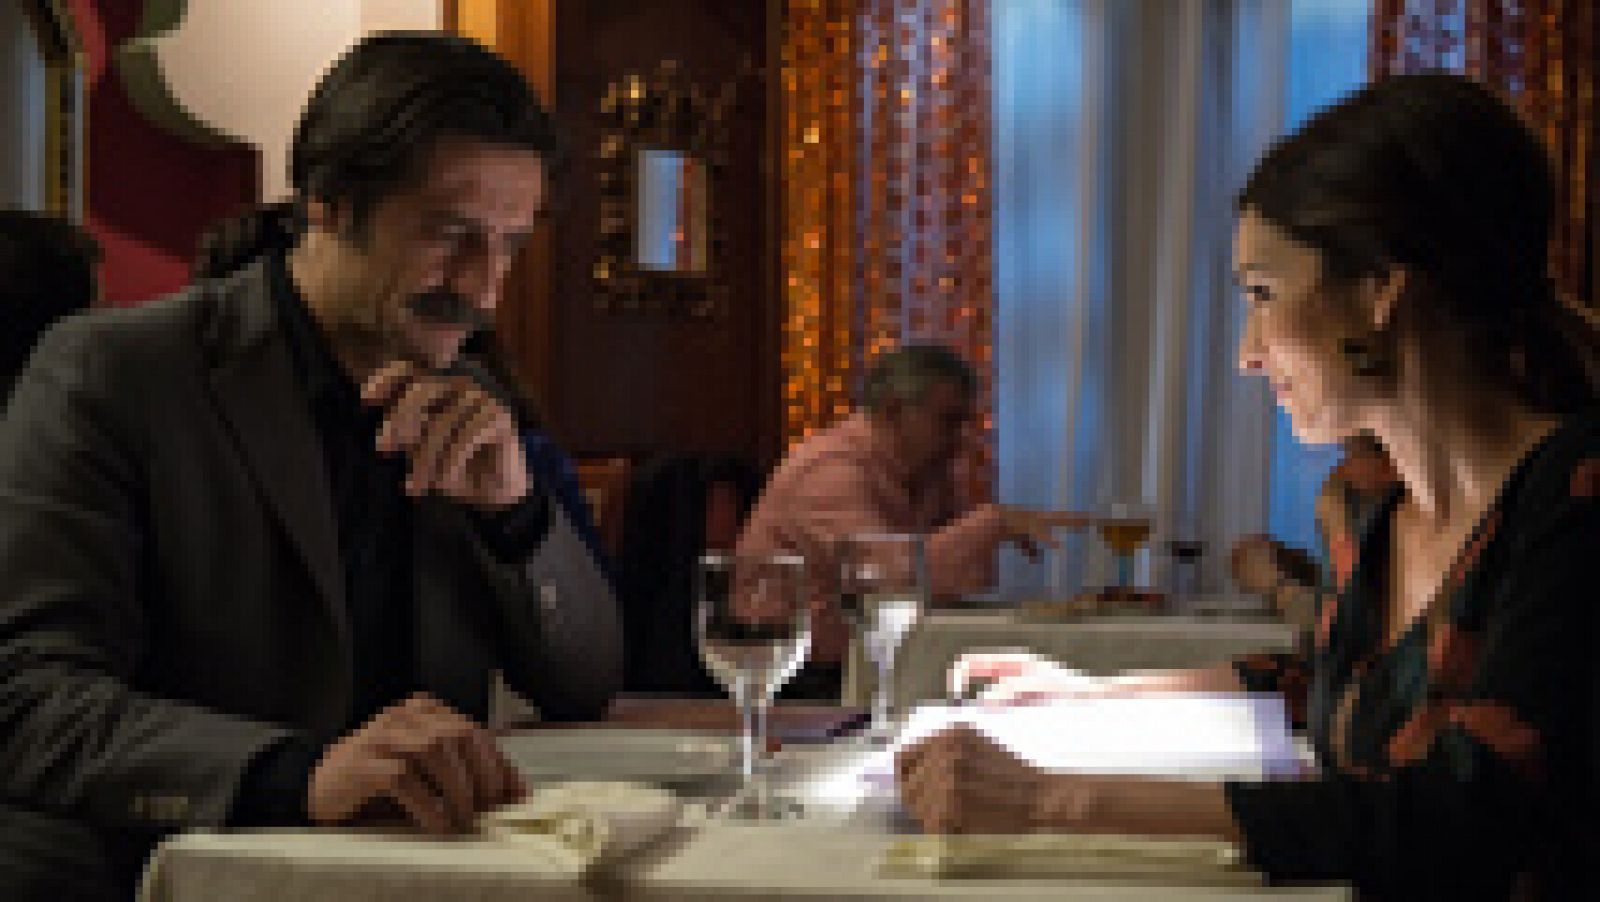 Alonso y Elena cenan juntos en un restaurante indio tras la aventura con Colón y él le confiesa que quiere estar sólo con ella, después de un intento fallido de darle celos.